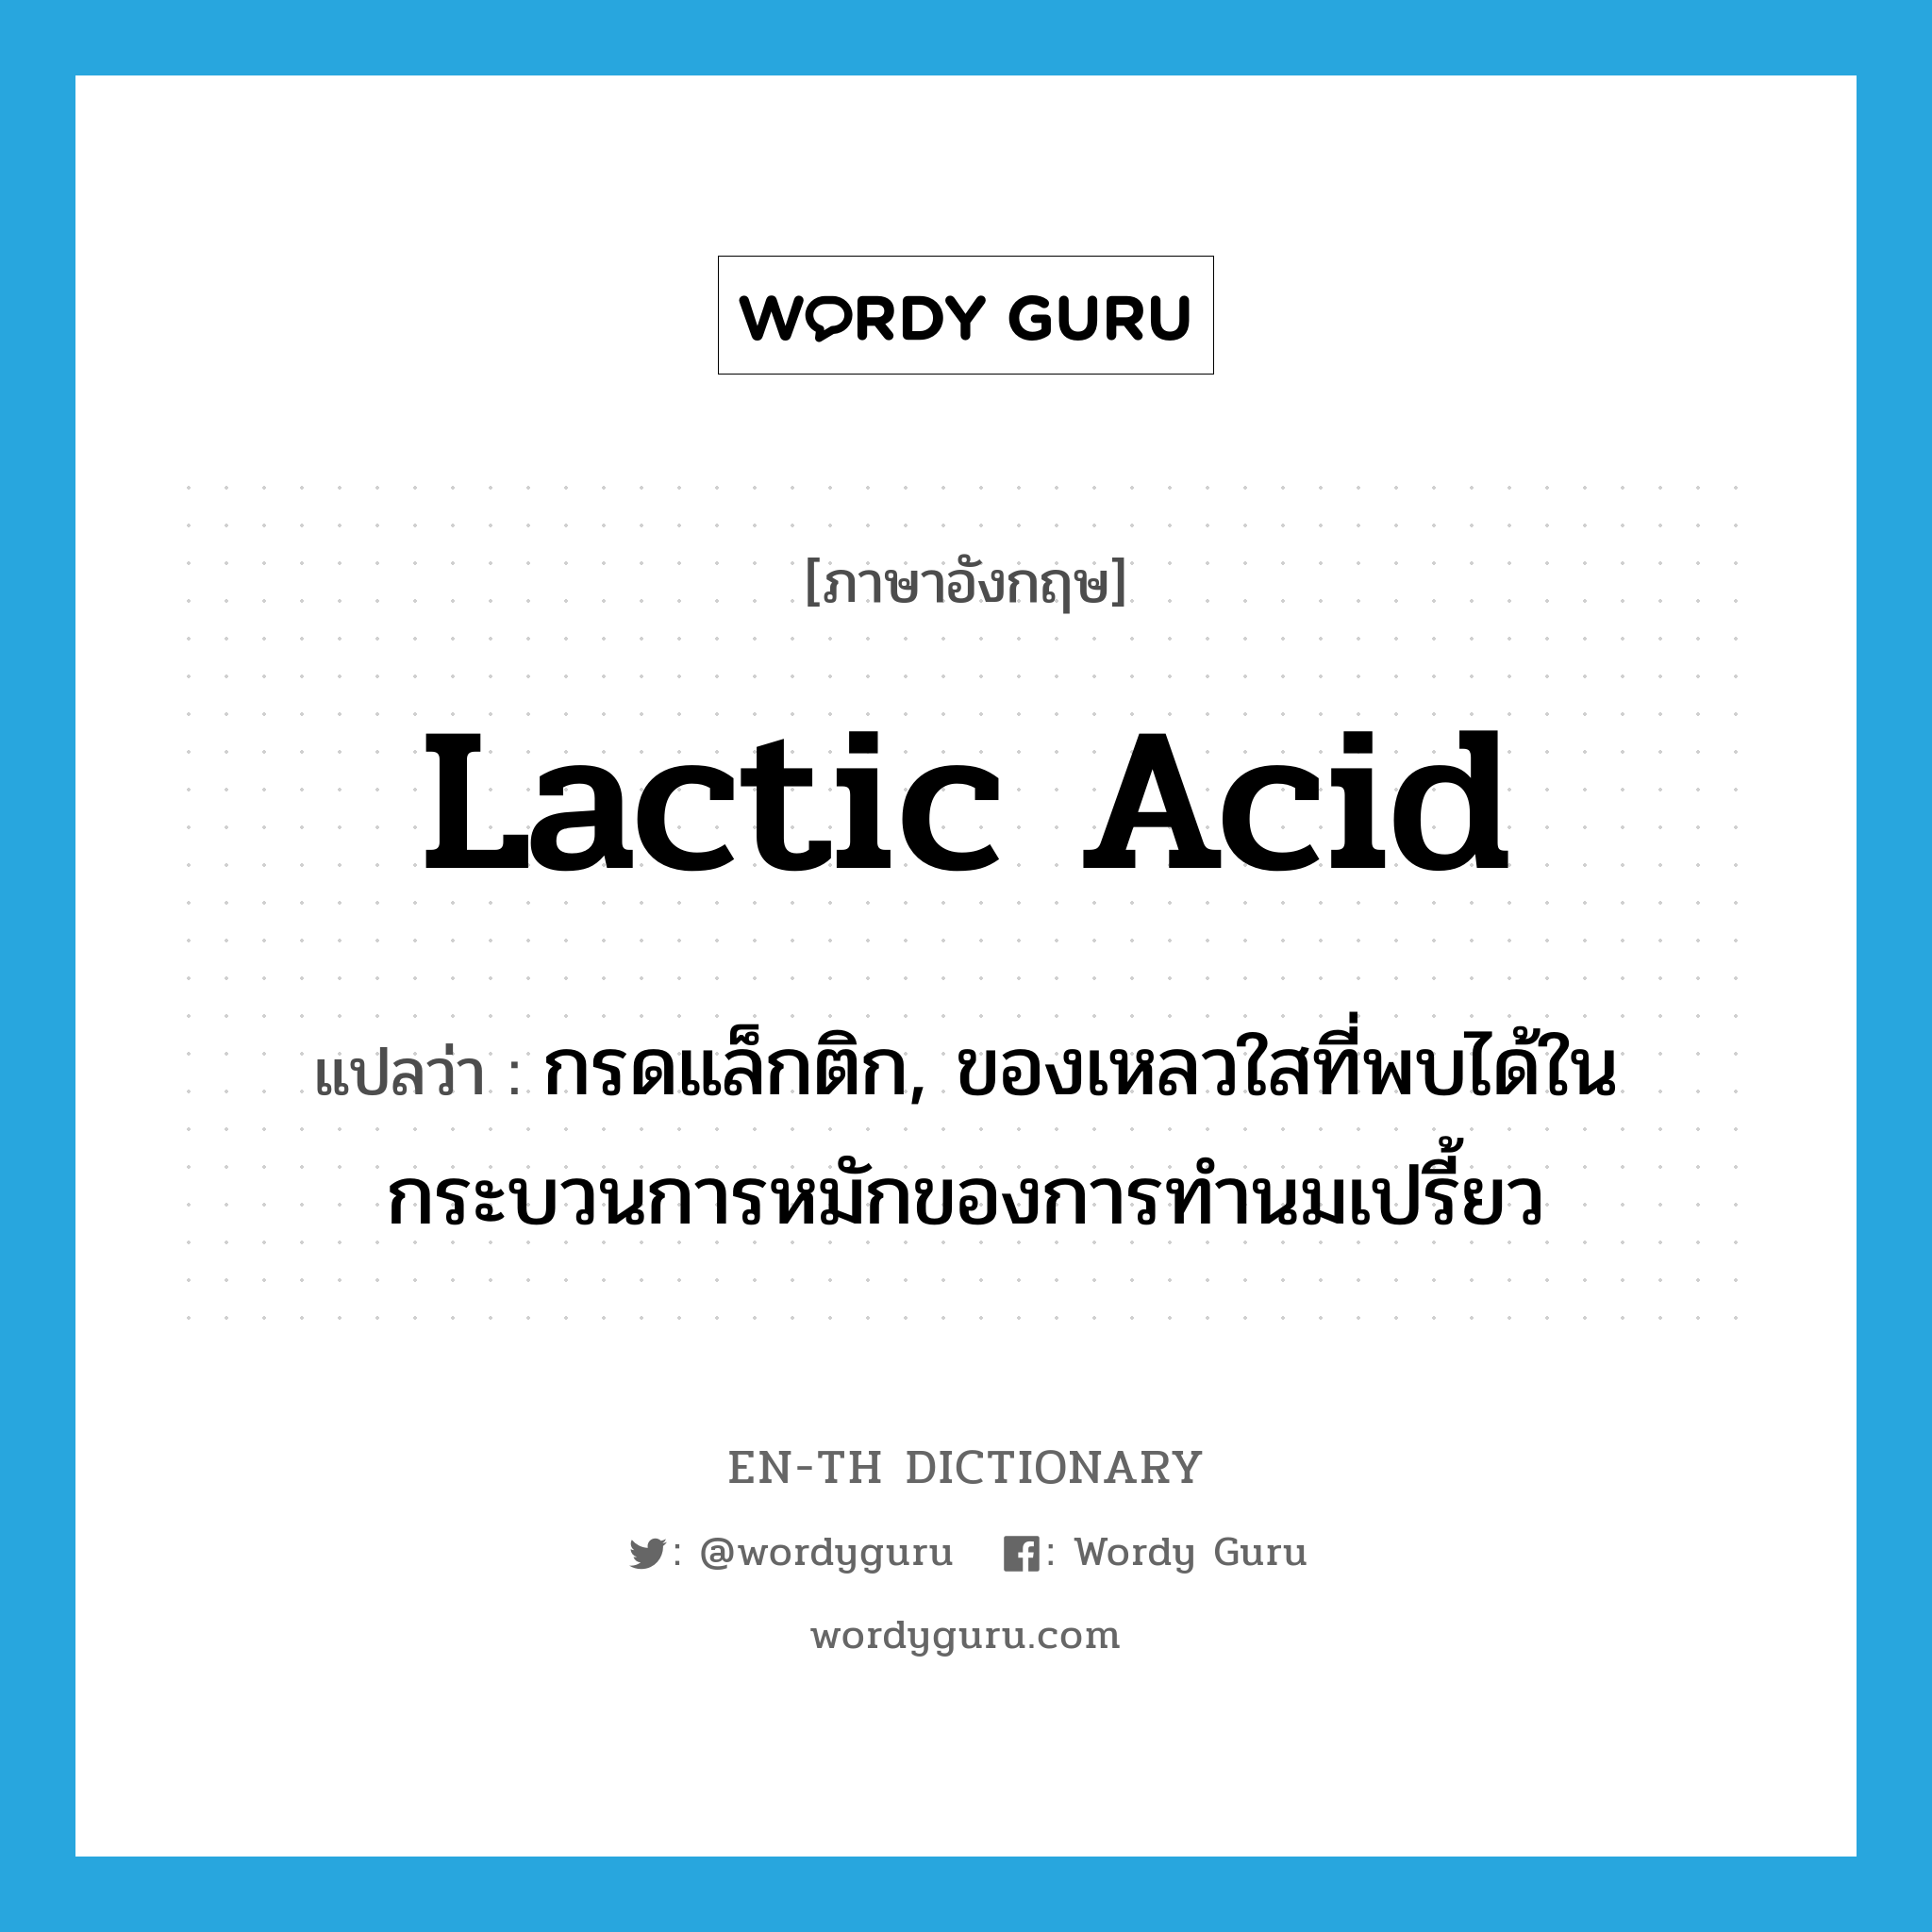 lactic acid แปลว่า?, คำศัพท์ภาษาอังกฤษ lactic acid แปลว่า กรดแล็กติก, ของเหลวใสที่พบได้ในกระบวนการหมักของการทำนมเปรี้ยว ประเภท N หมวด N